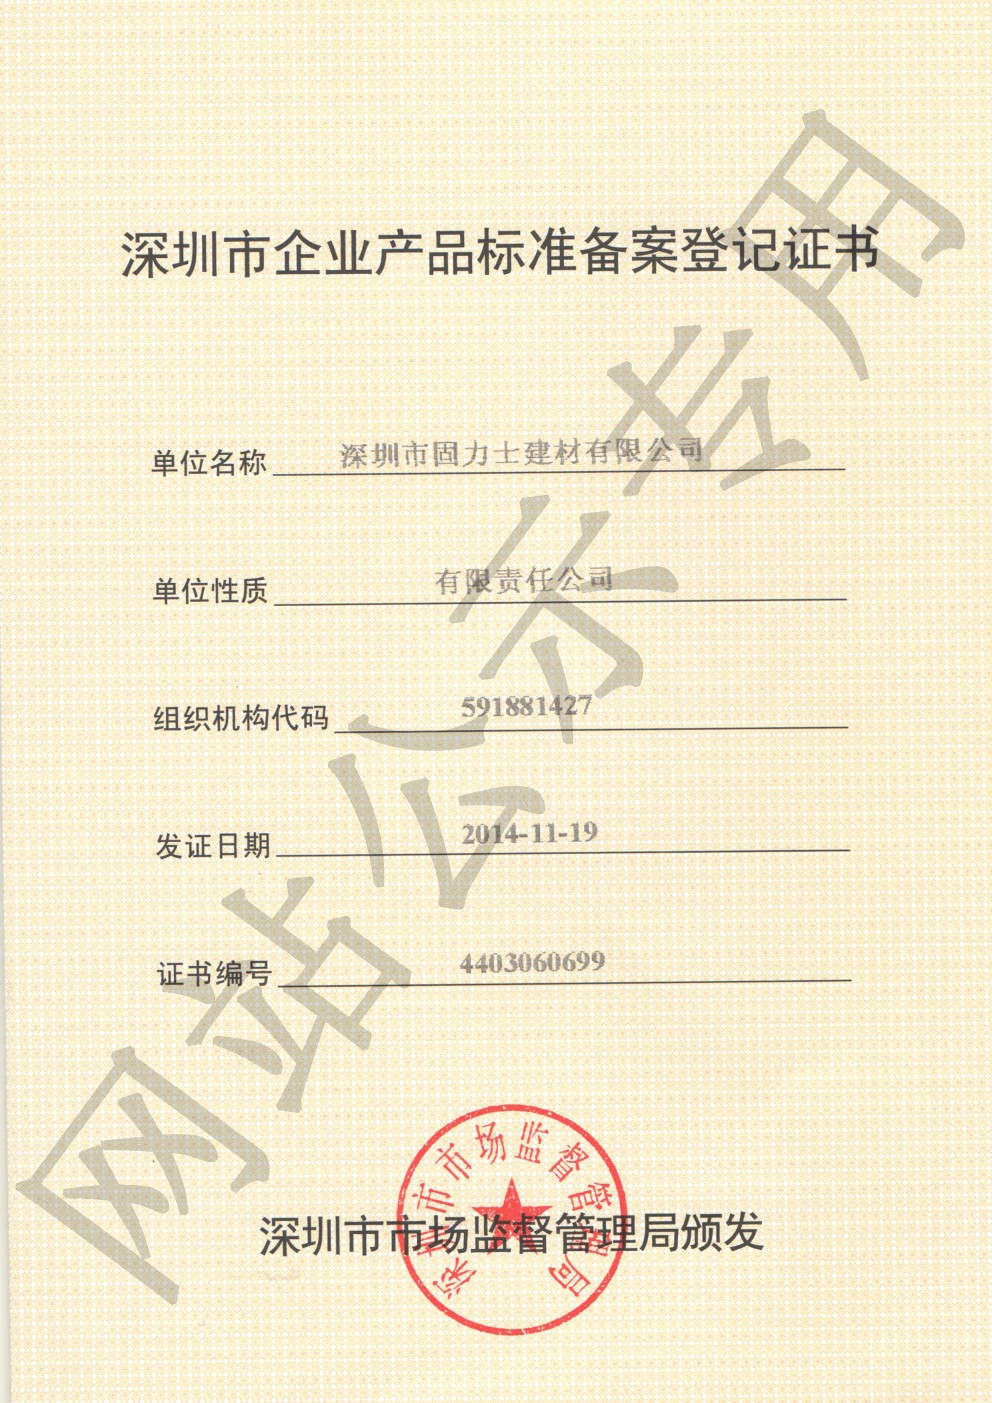 大路镇企业产品标准登记证书